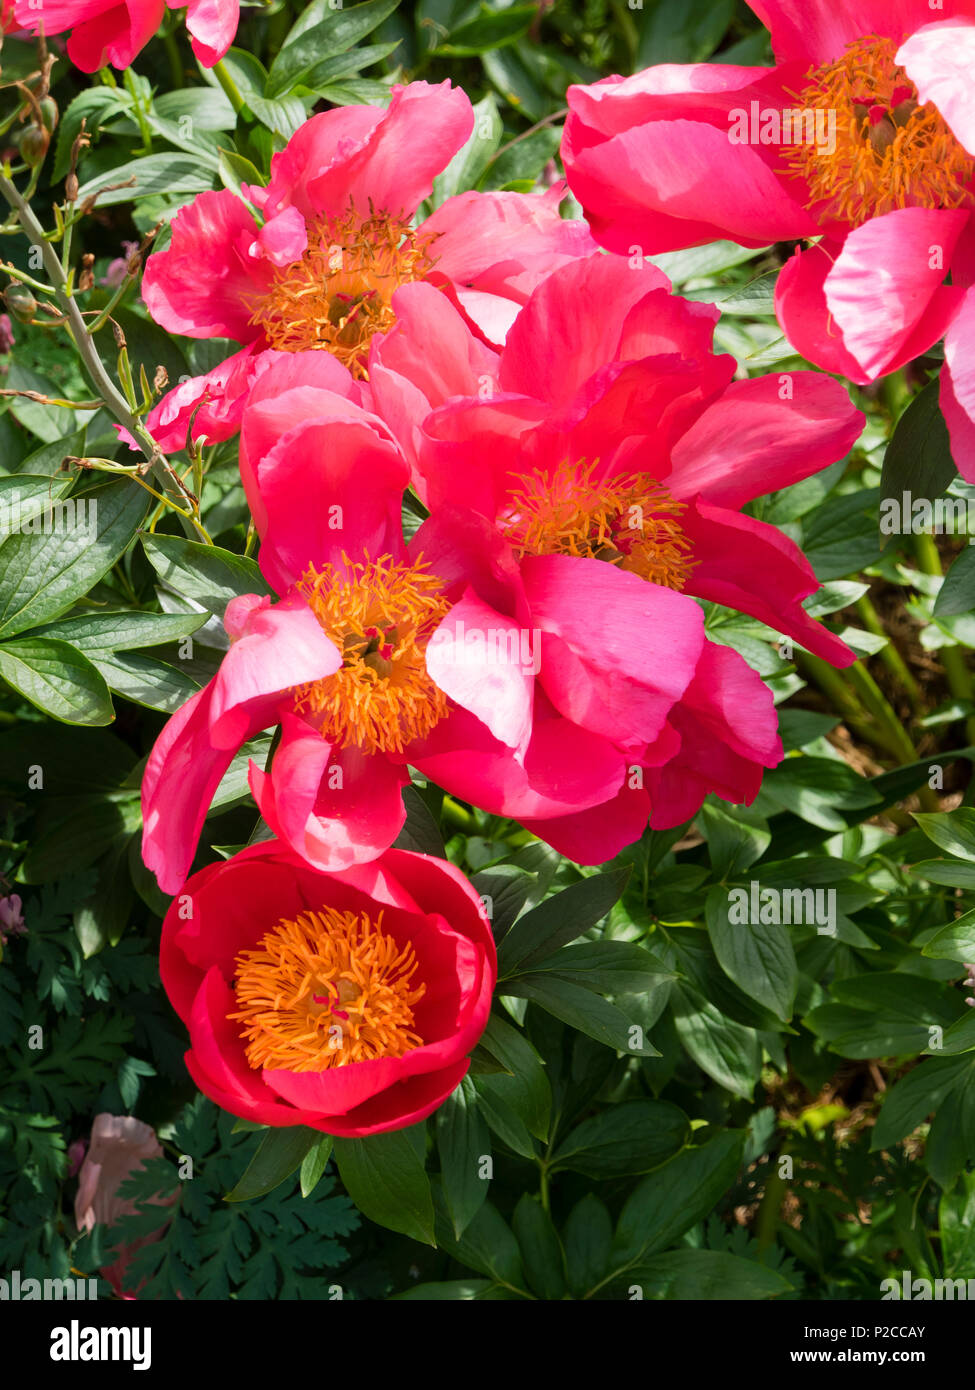 Neu öffnen und reife rote einzelne Blumen der Hardy krautigen Arten, Pfingstrose Paeonia peregrina 'Flame' Stockfoto